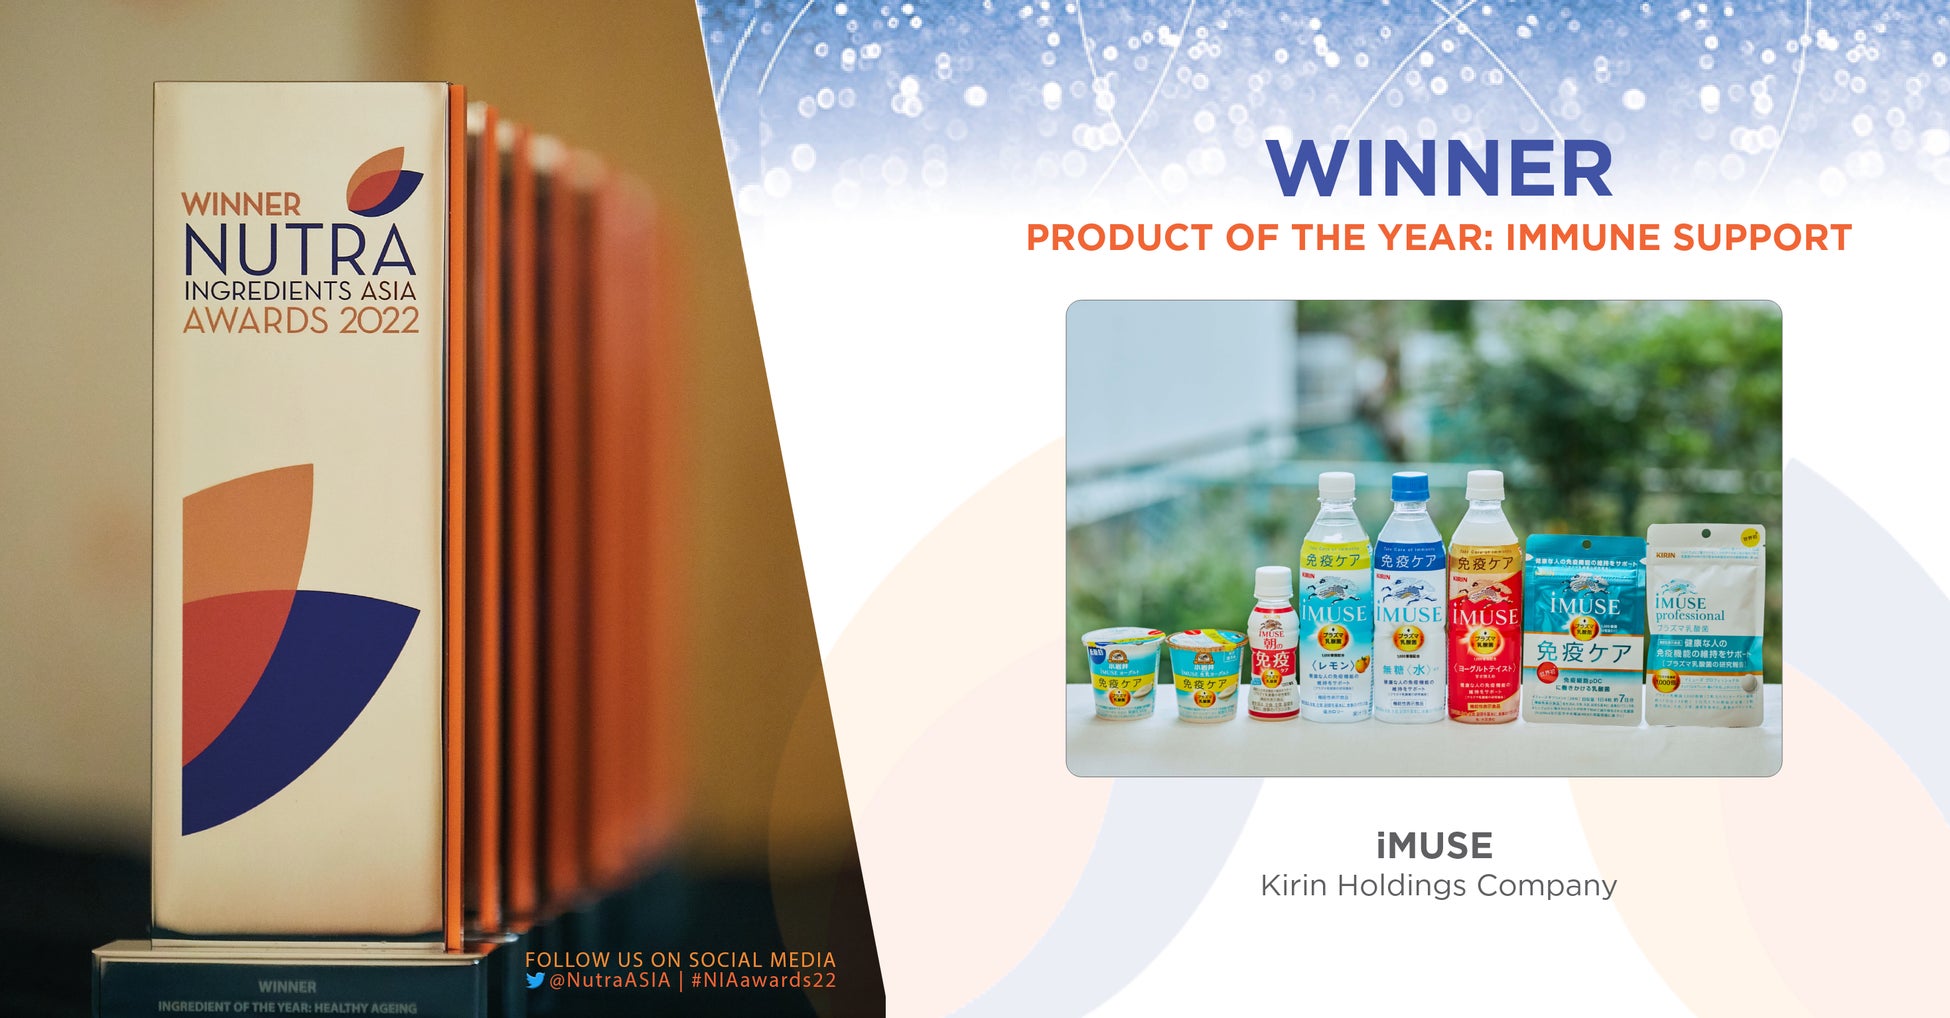 キリン独自素材「プラズマ乳酸菌」を使った「iMUSE」ブランドがNutralngredients-Asia Awardsの「免疫サポート」部門で2022年度「プロダクト・オブ・ザ・イヤー」を受賞